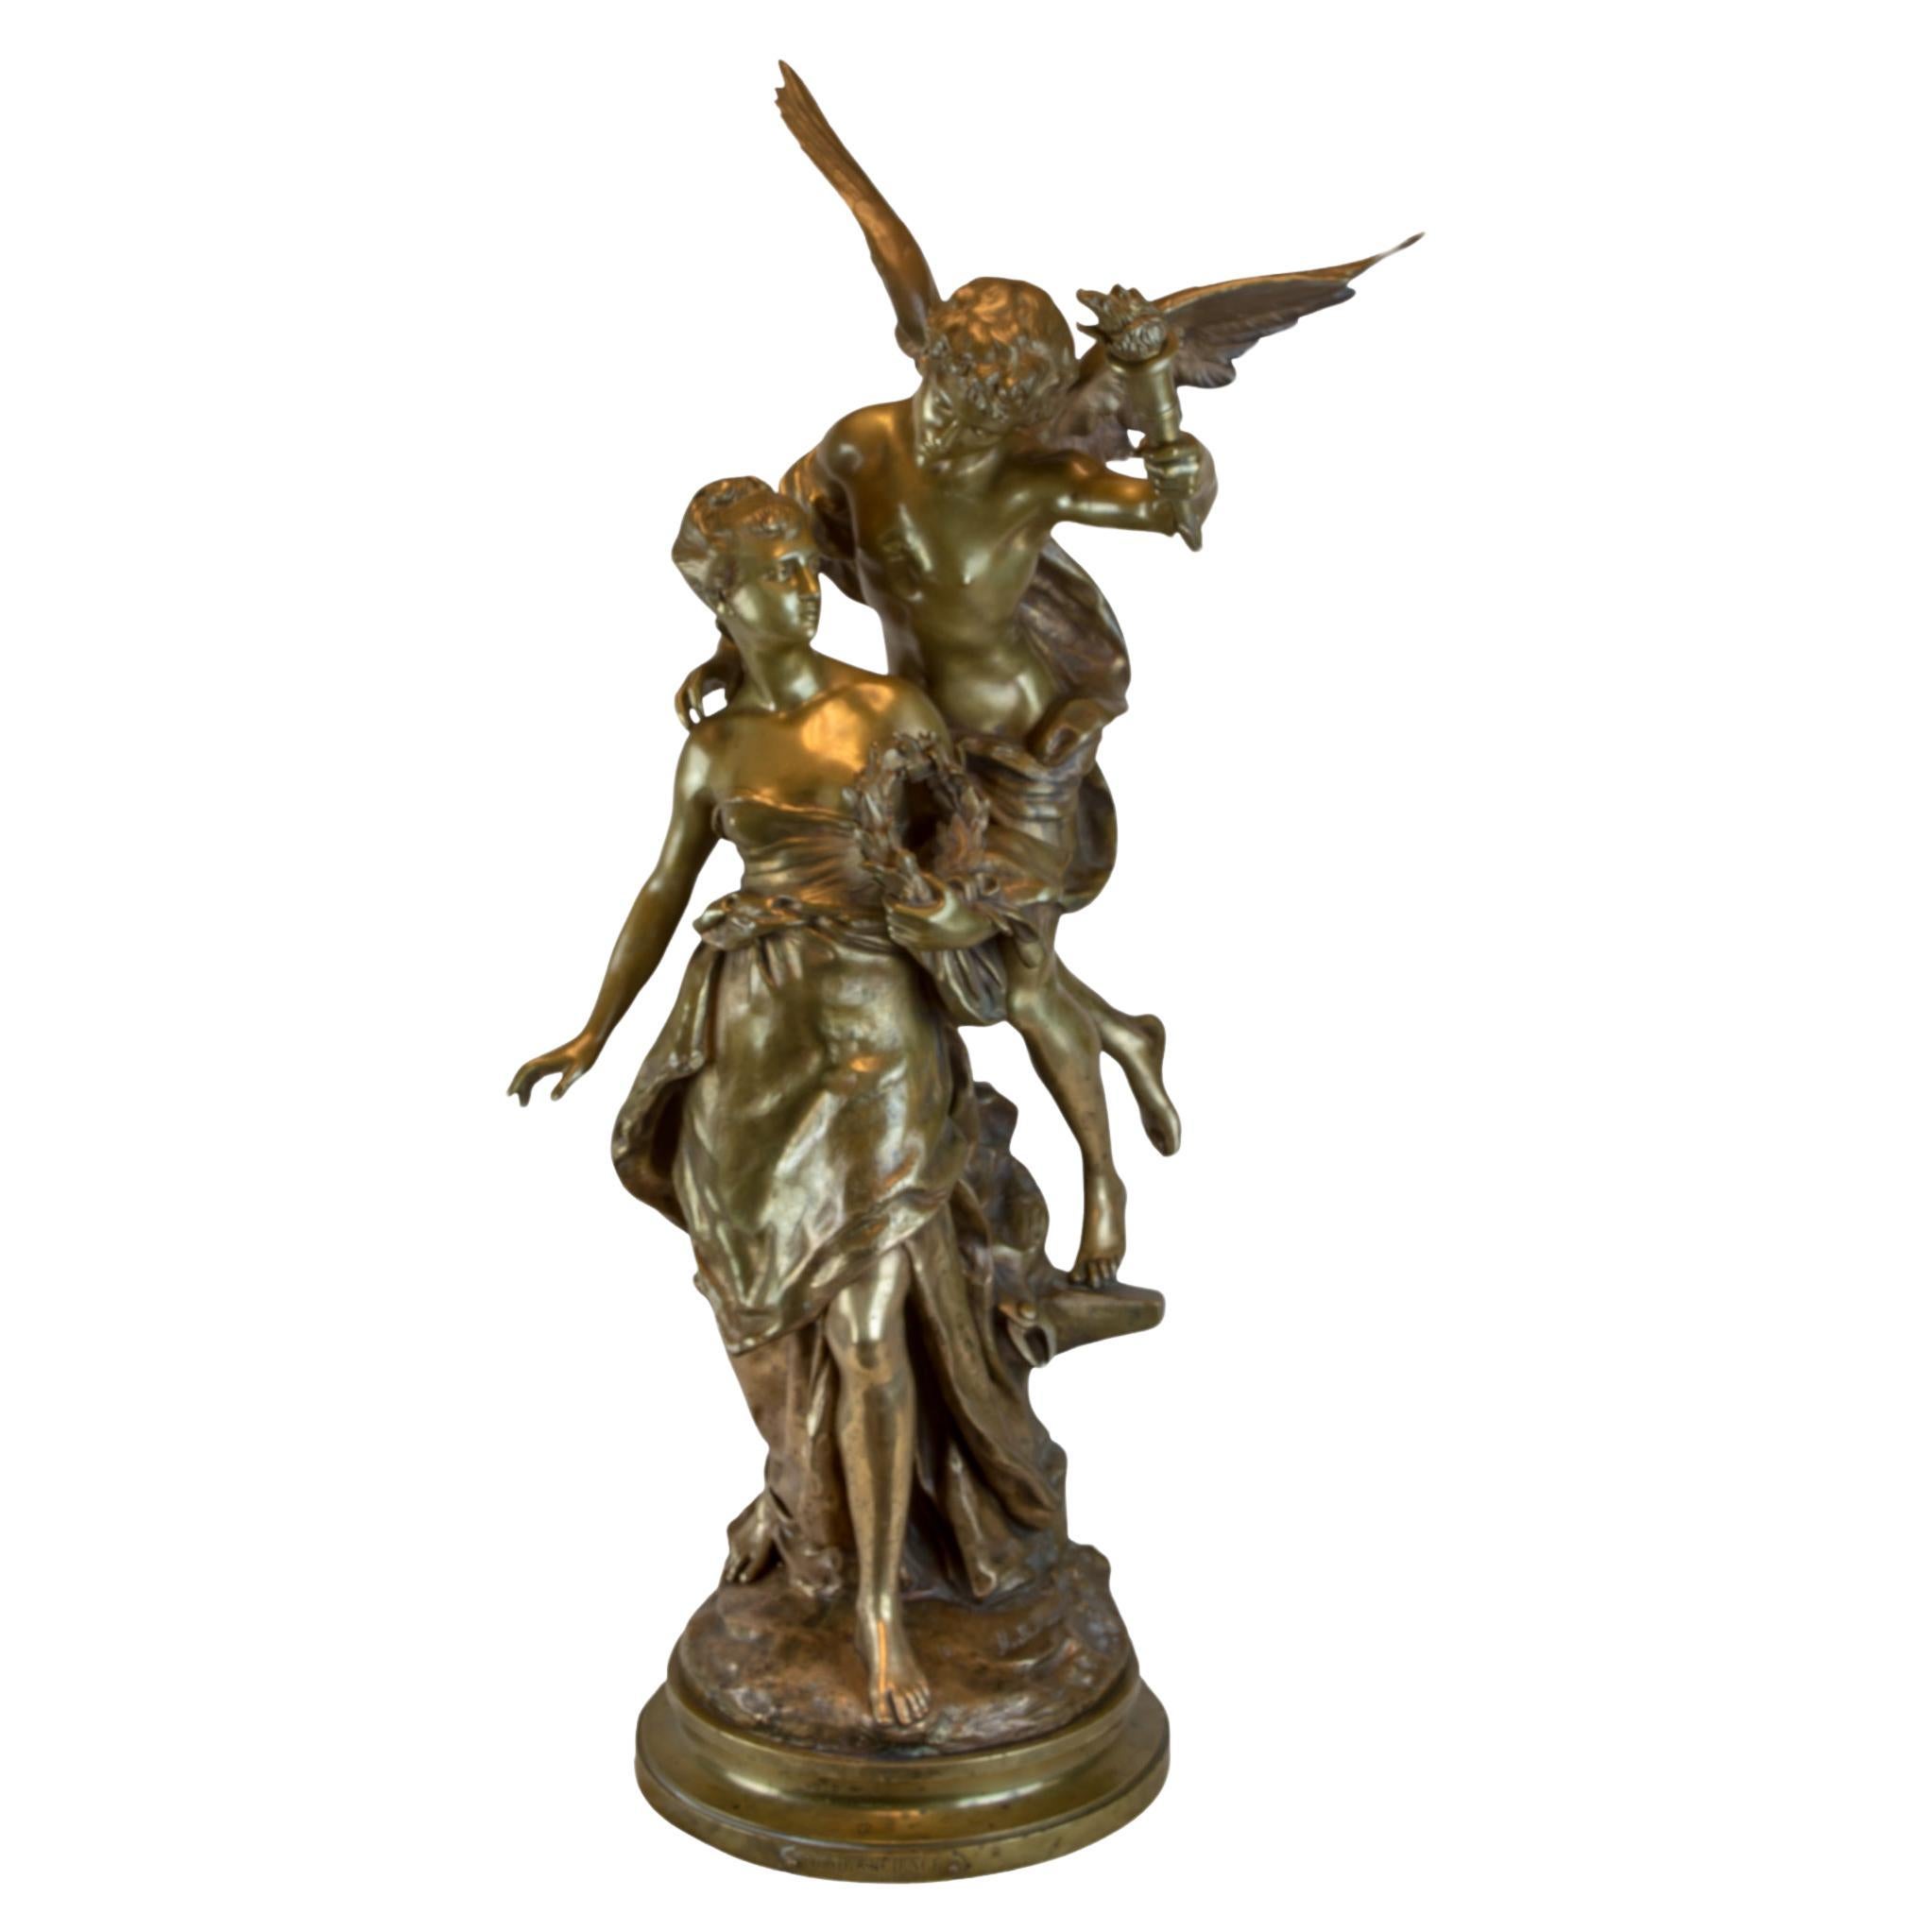 Patinierte Bronzestatue in hoher Qualität von Mathurin Moreau